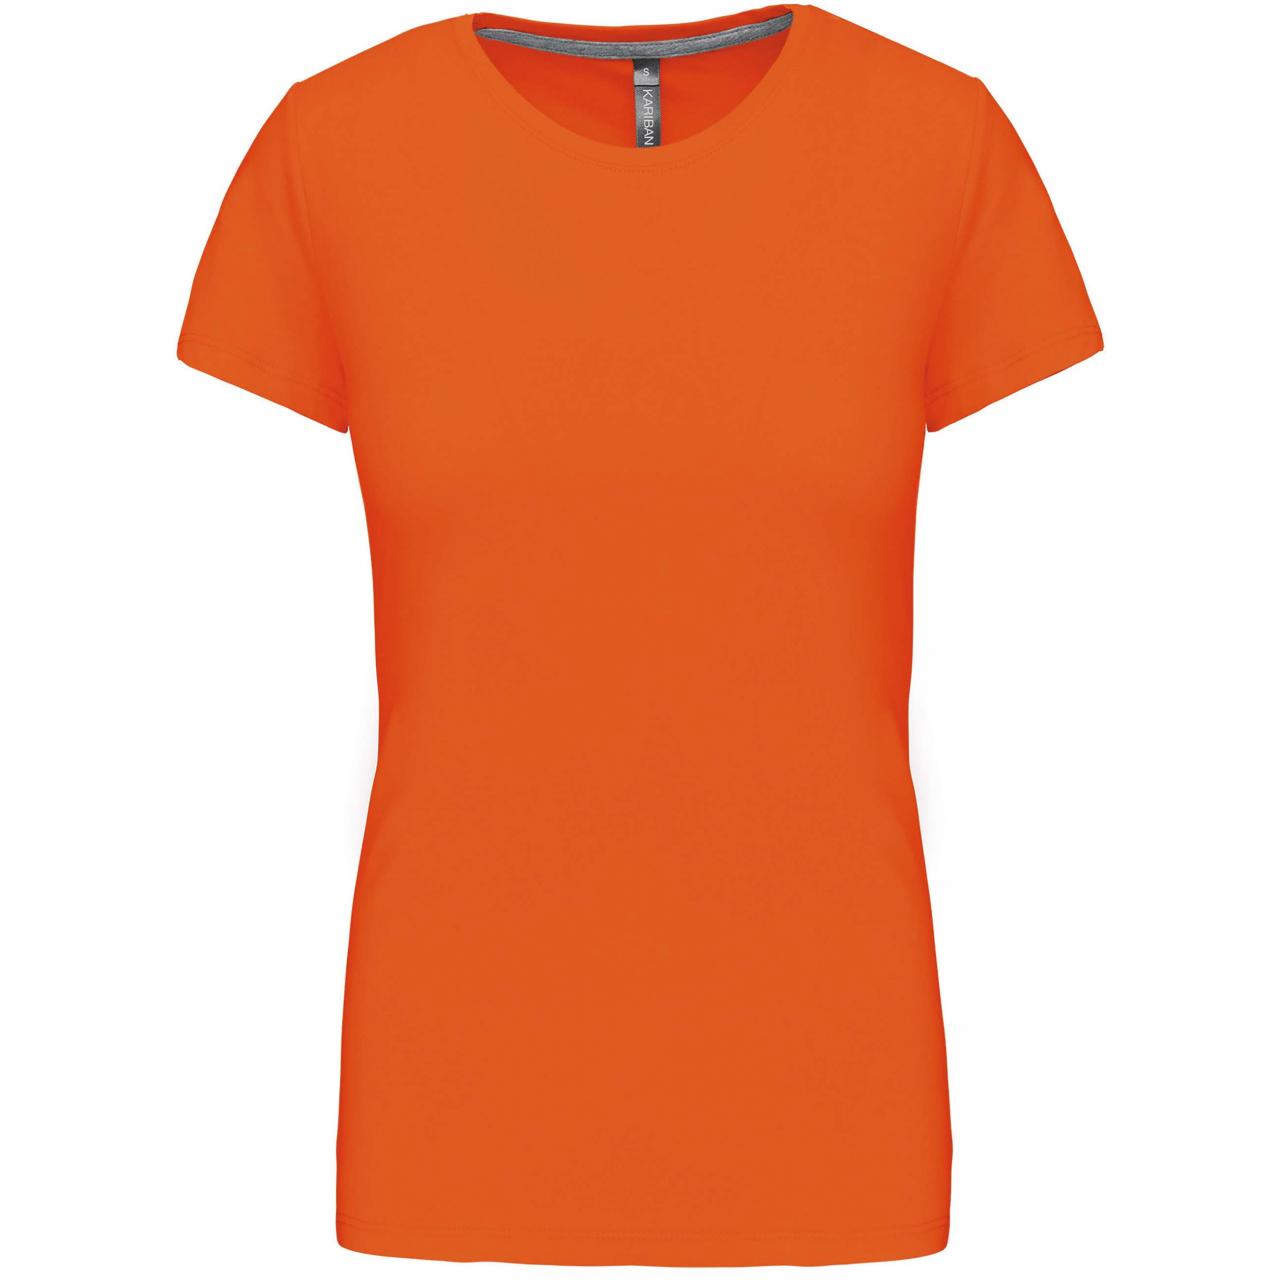 Dámské tričko Kariban s krátkým rukávem - oranžové, 3XL